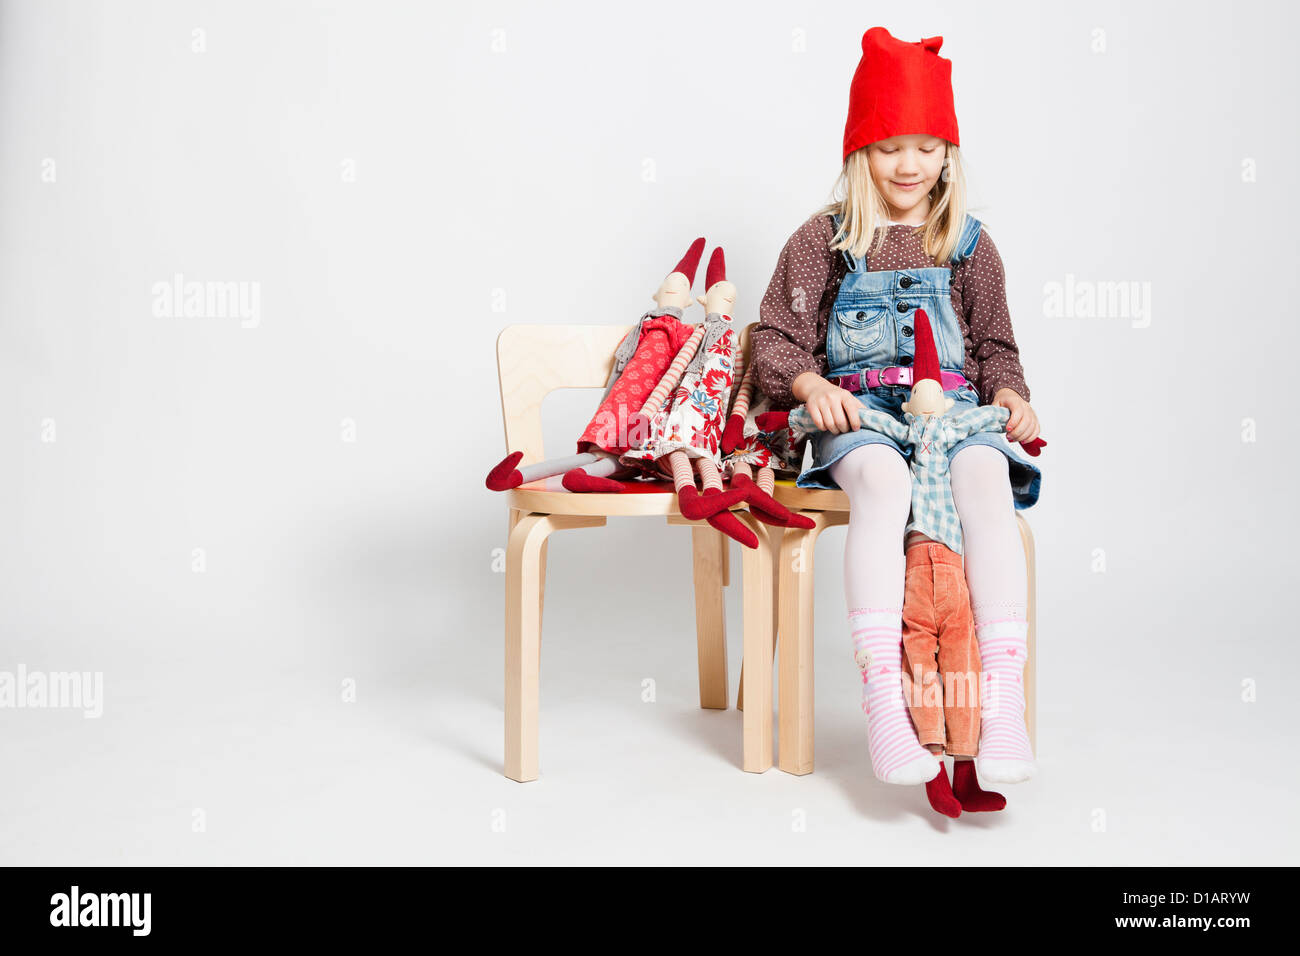 Studio portrait of happy young girl sitting on chair et en jouant avec des poupées jouet lutin de Noël Banque D'Images